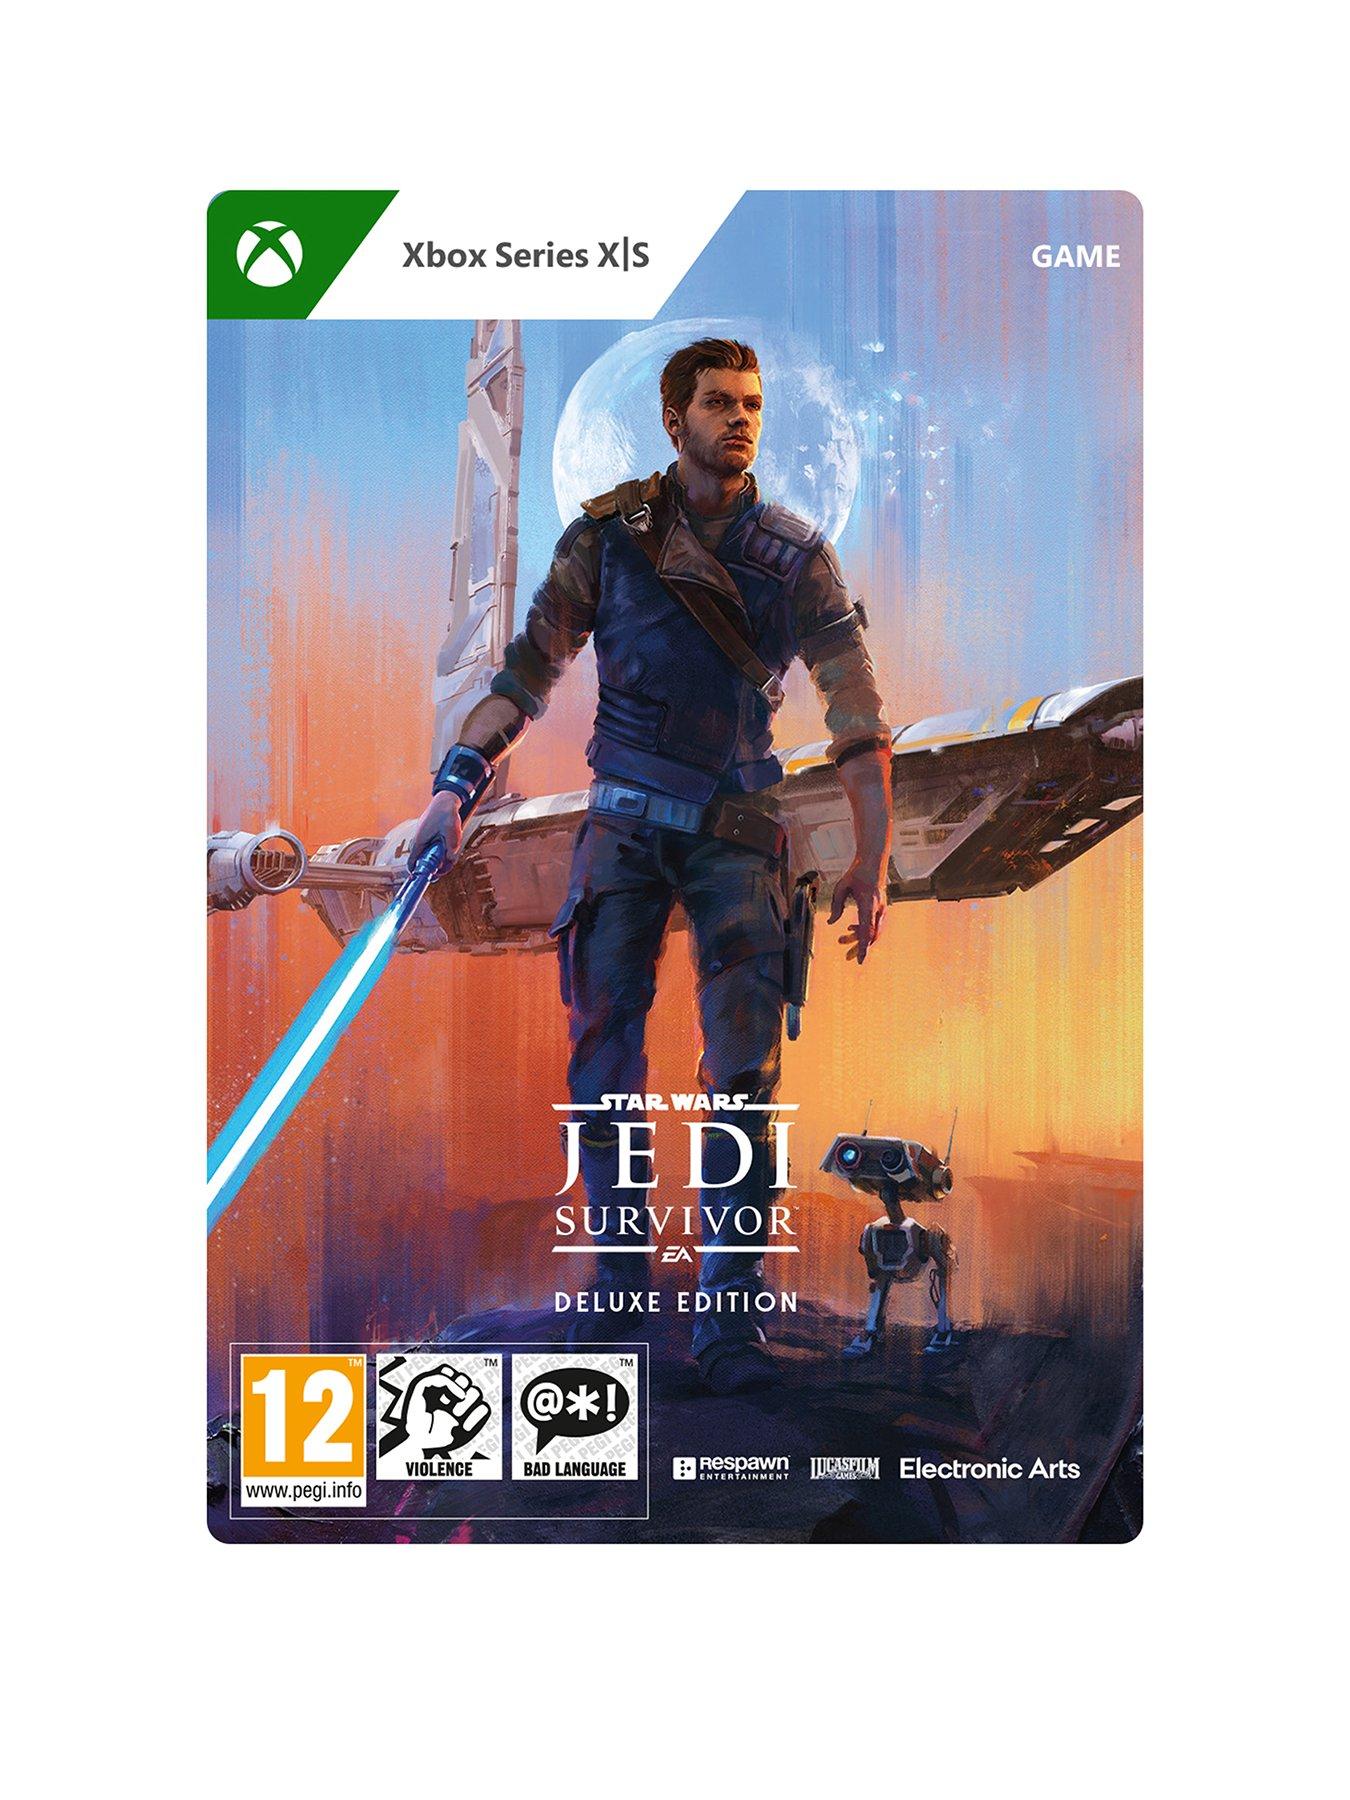 Star Wars Jedi: Survivor Is PlayStation 5, Xbox Series X/S Only